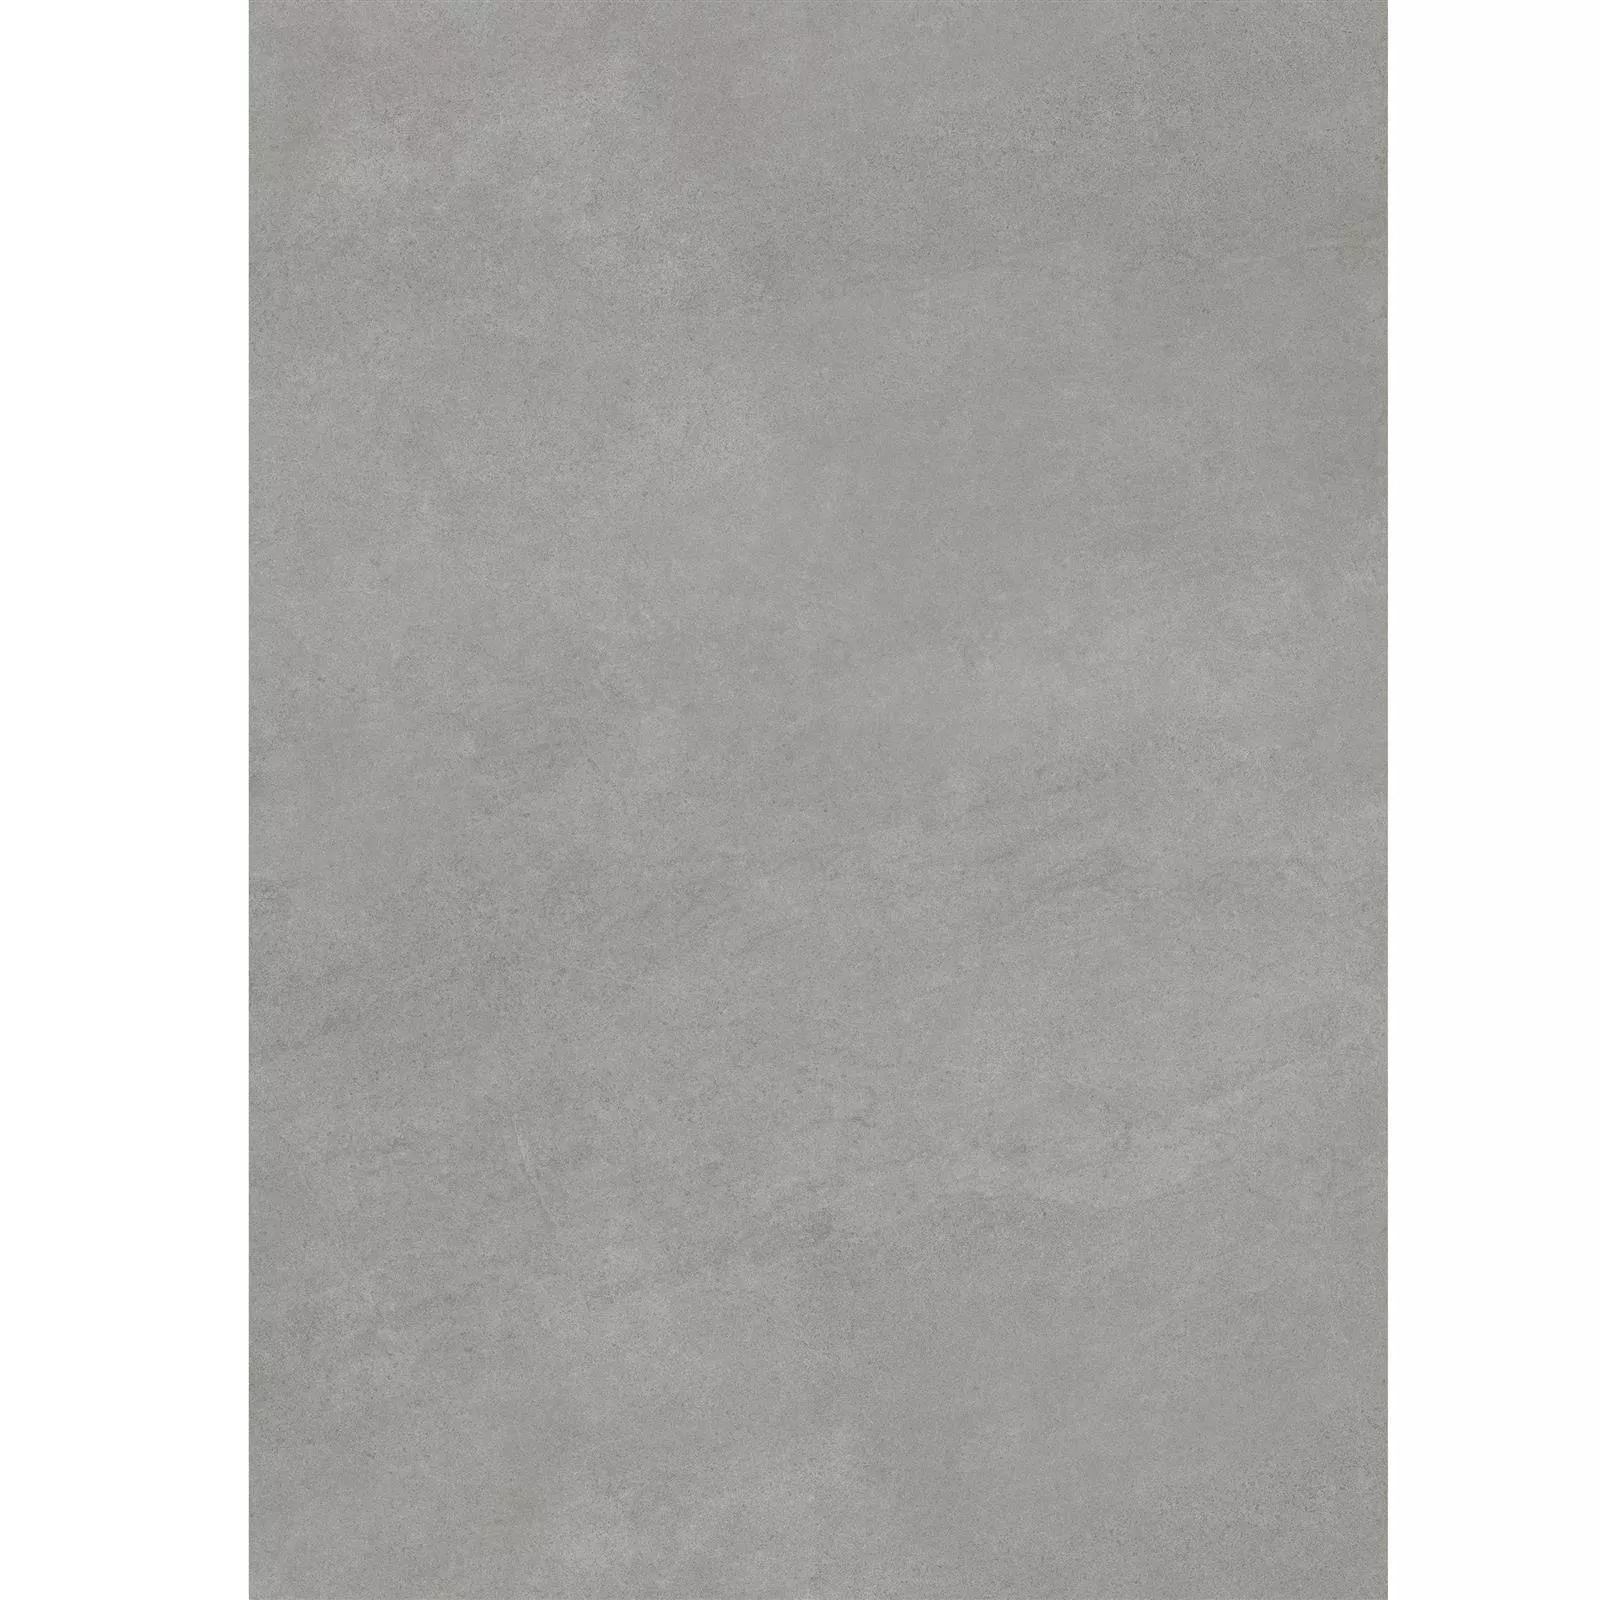 Ploče Za Terasu Imitacija Cementa Glinde Siva 60x120cm